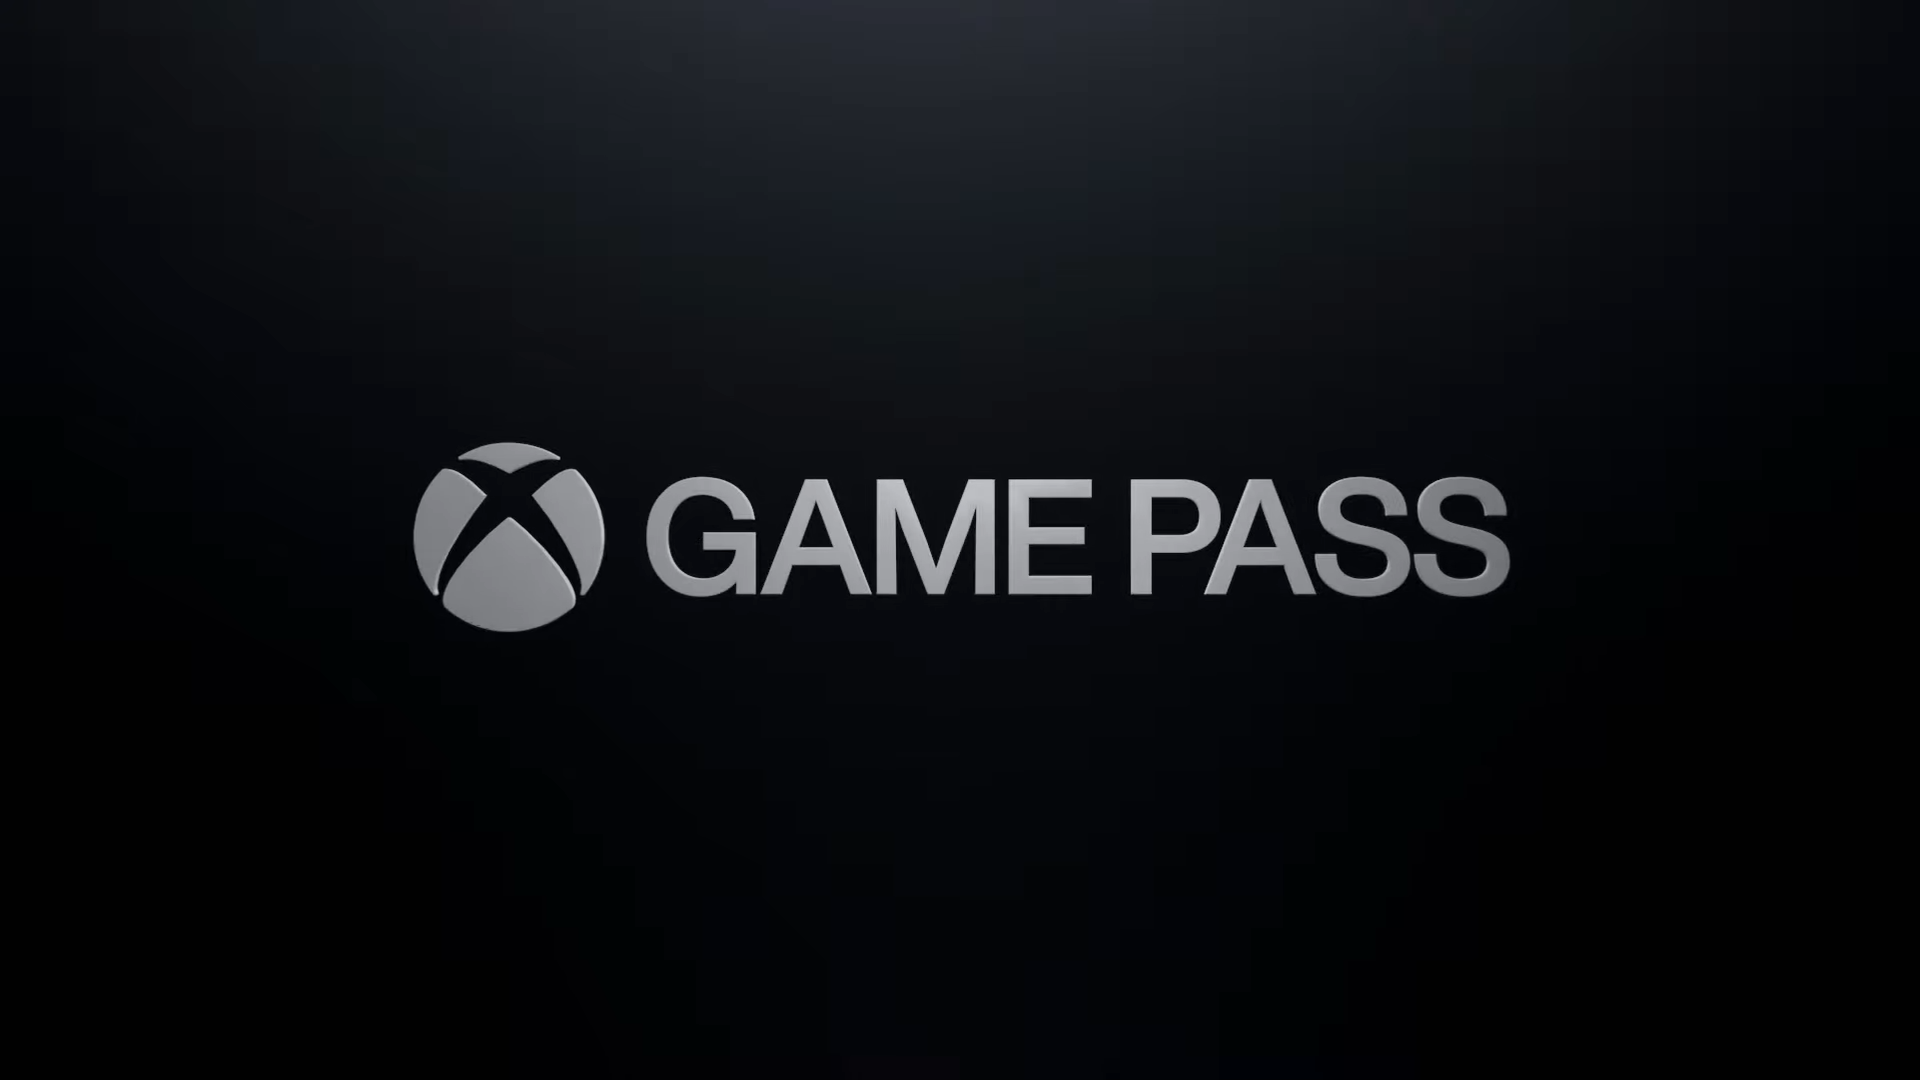 Xbox Game Pass Ultimate : l'abonnement tout compris à 12,99 euros par mois  est officiel